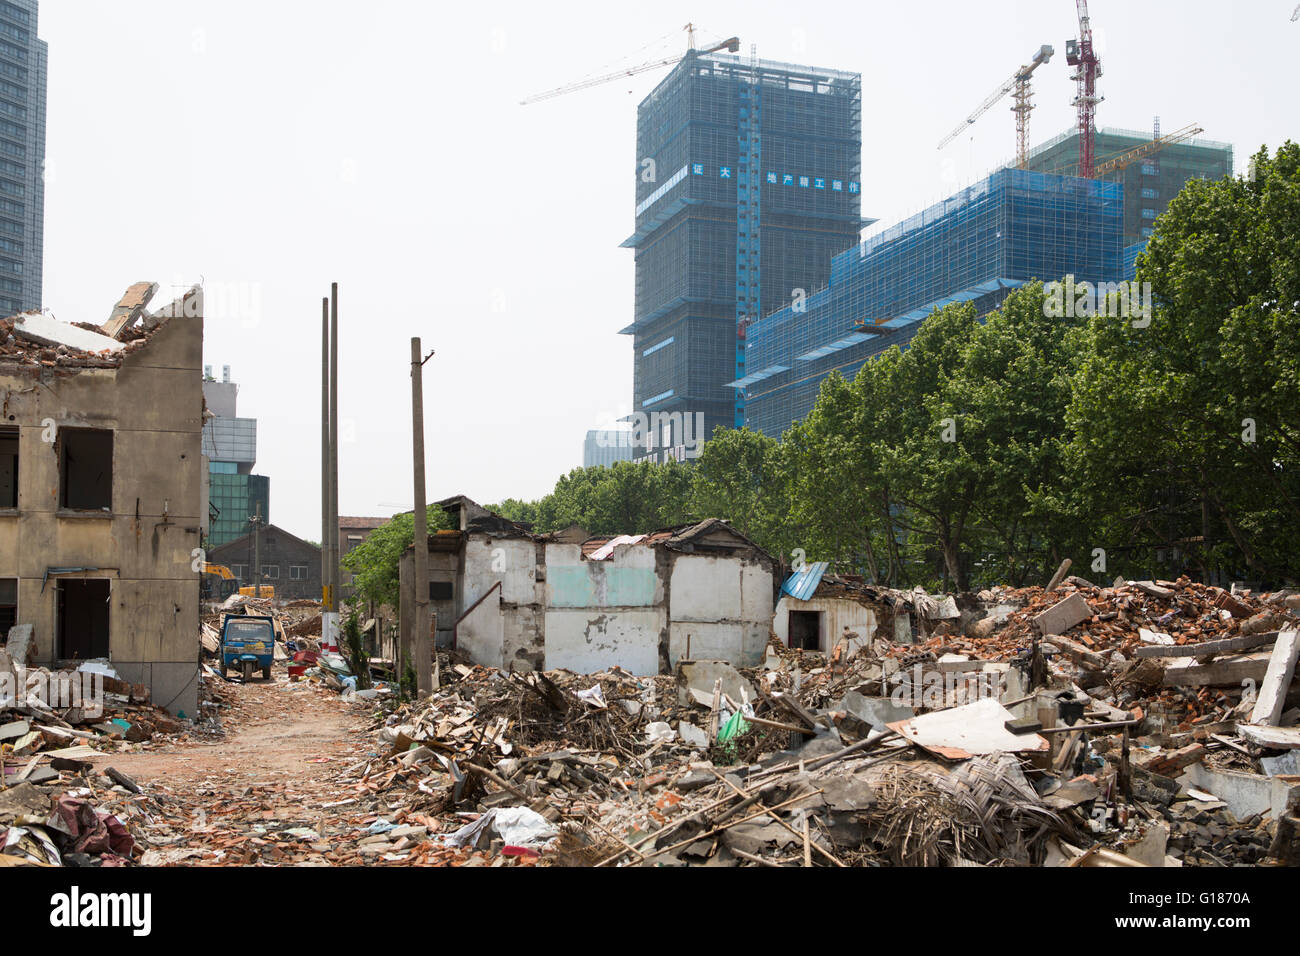 Abgerissen chinesische Häuser mit Ablagerungen am Boden, für neue Gebäude Urbanisierung Aktivität, Neubau mit Kränen Hintergrund Stockfoto